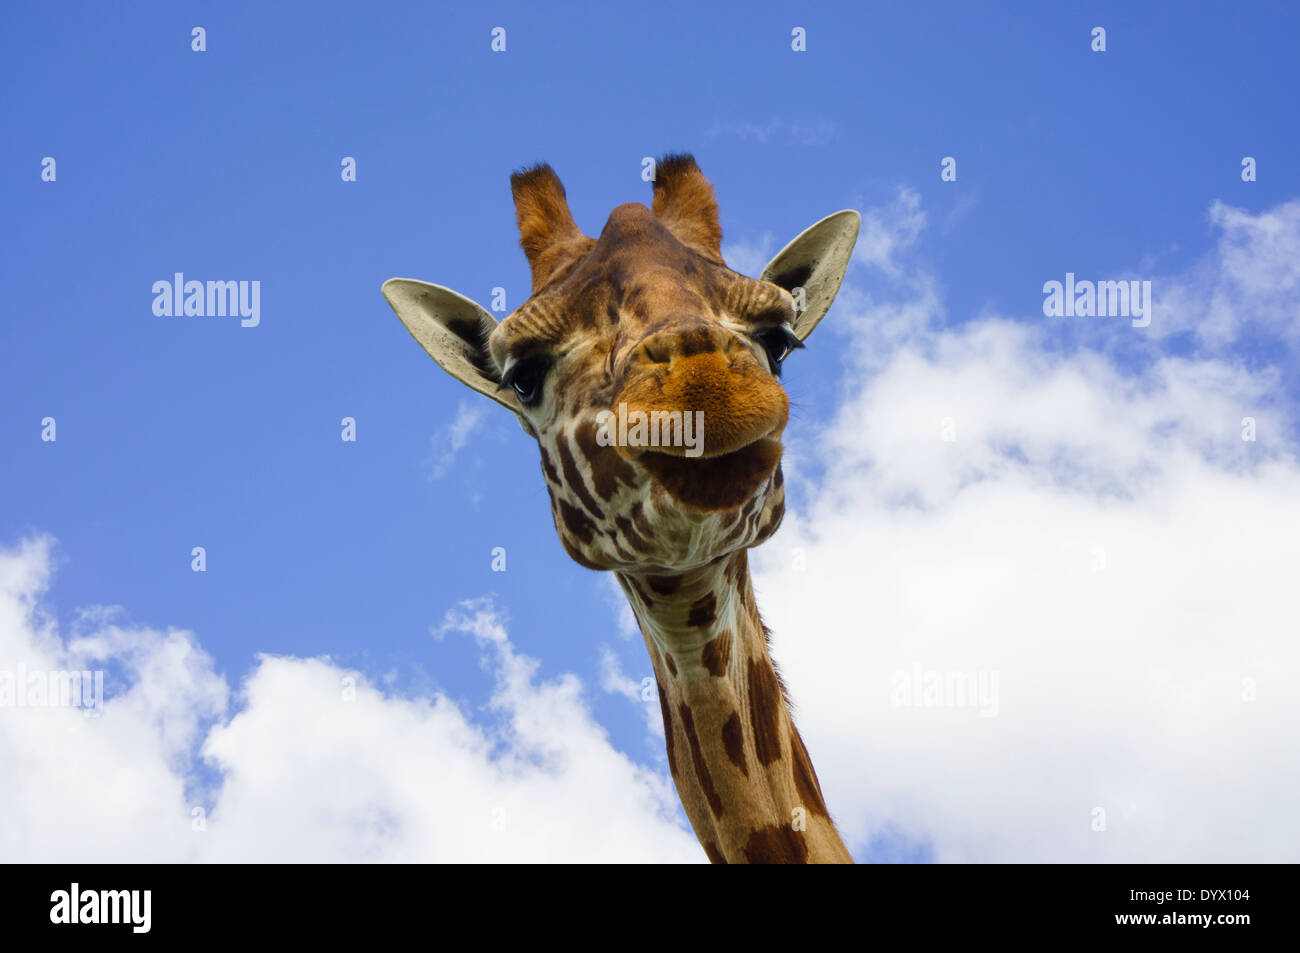 Jirafa macho camelopardalis cabeza y cara en vista frontal mirando la cámara contra un cielo azul Foto de stock